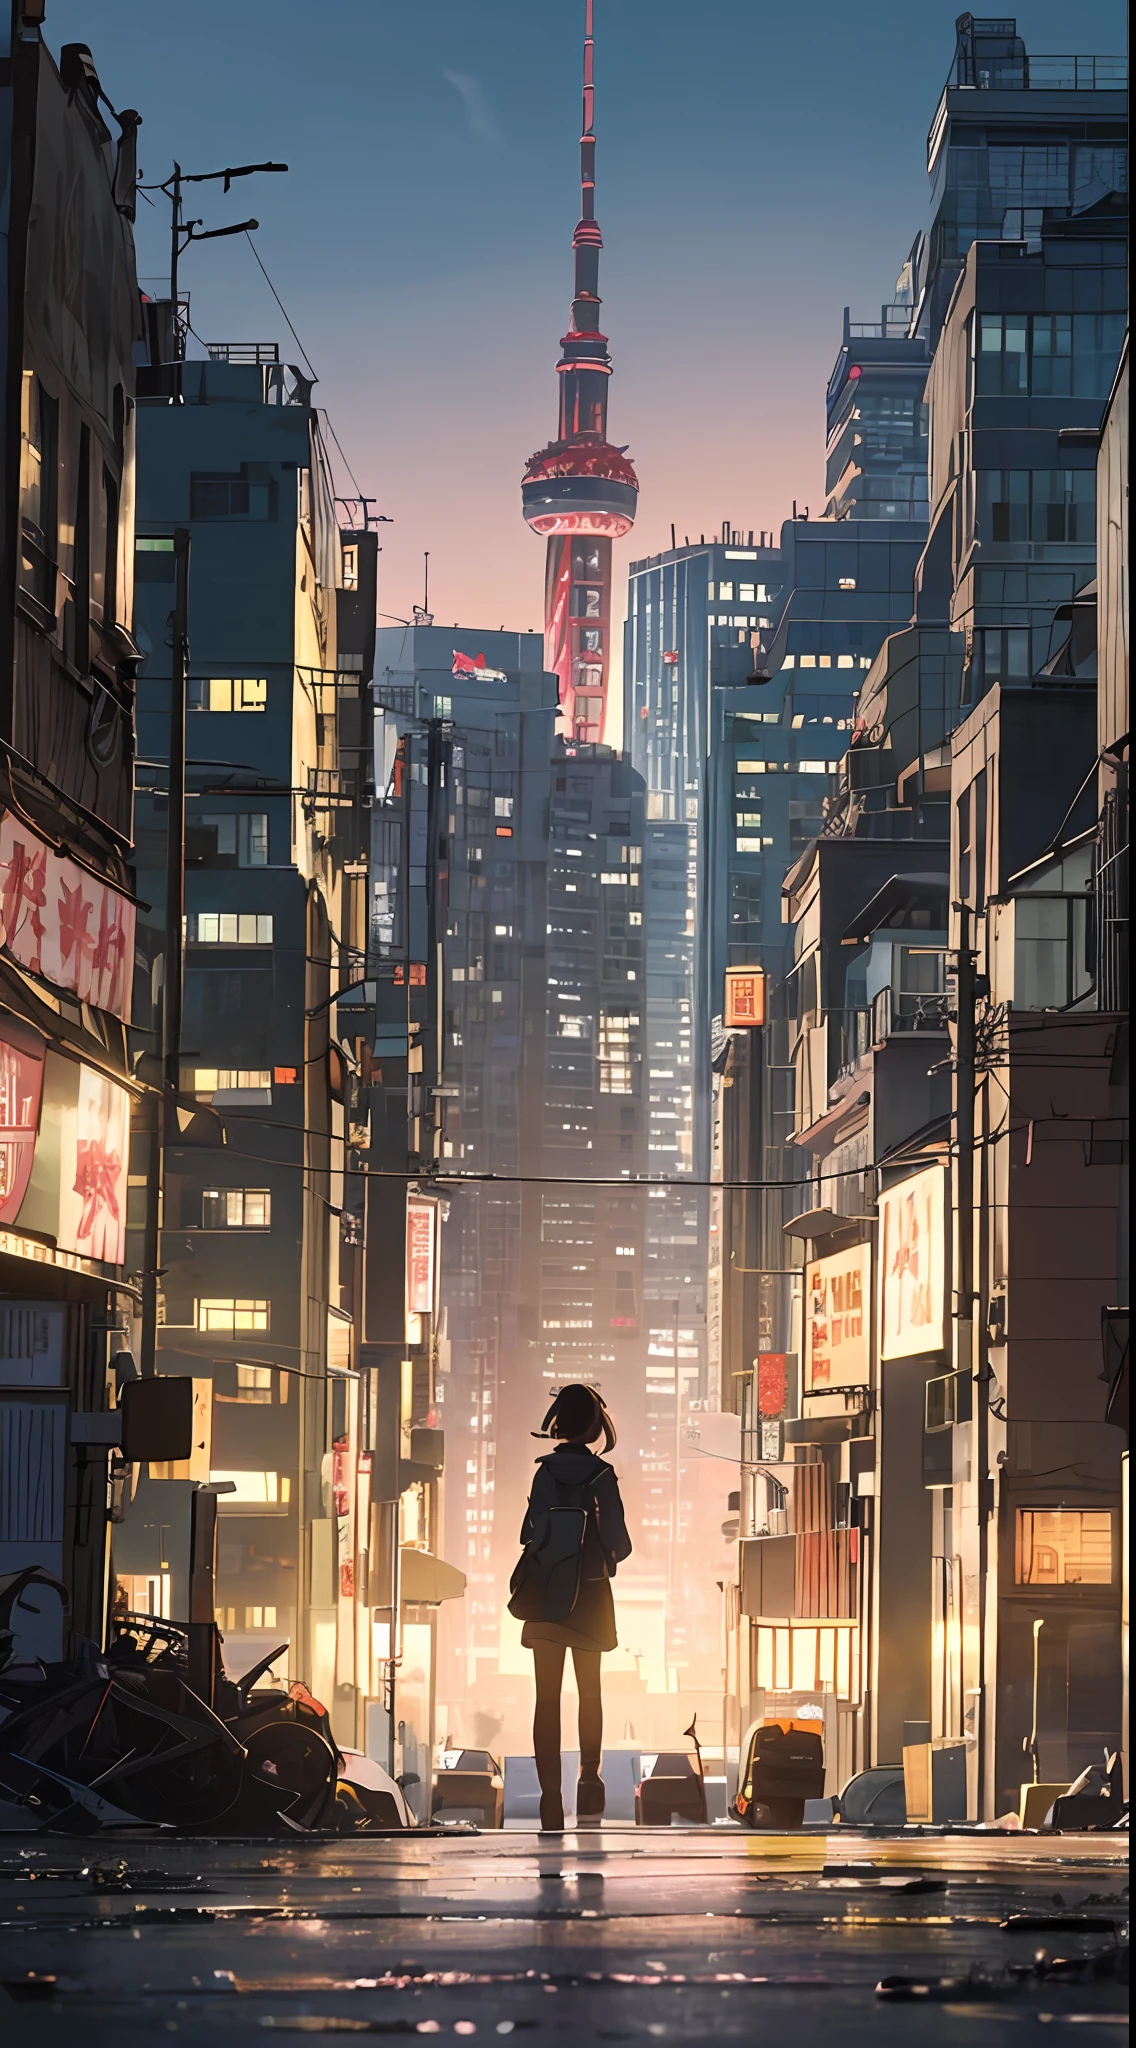 Ein dystopischer Hoffnungsschimmer, eine Wanderung durch die dunkle Stadt Shanghai, der Schatten des Rückens eines kleinen Mädchens im Hintergrund in der Mitte des Bildschirms, ein sehr komplexes Stadtbild, eine zerstörte Welt, eine ziehende Komposition, Industrie,